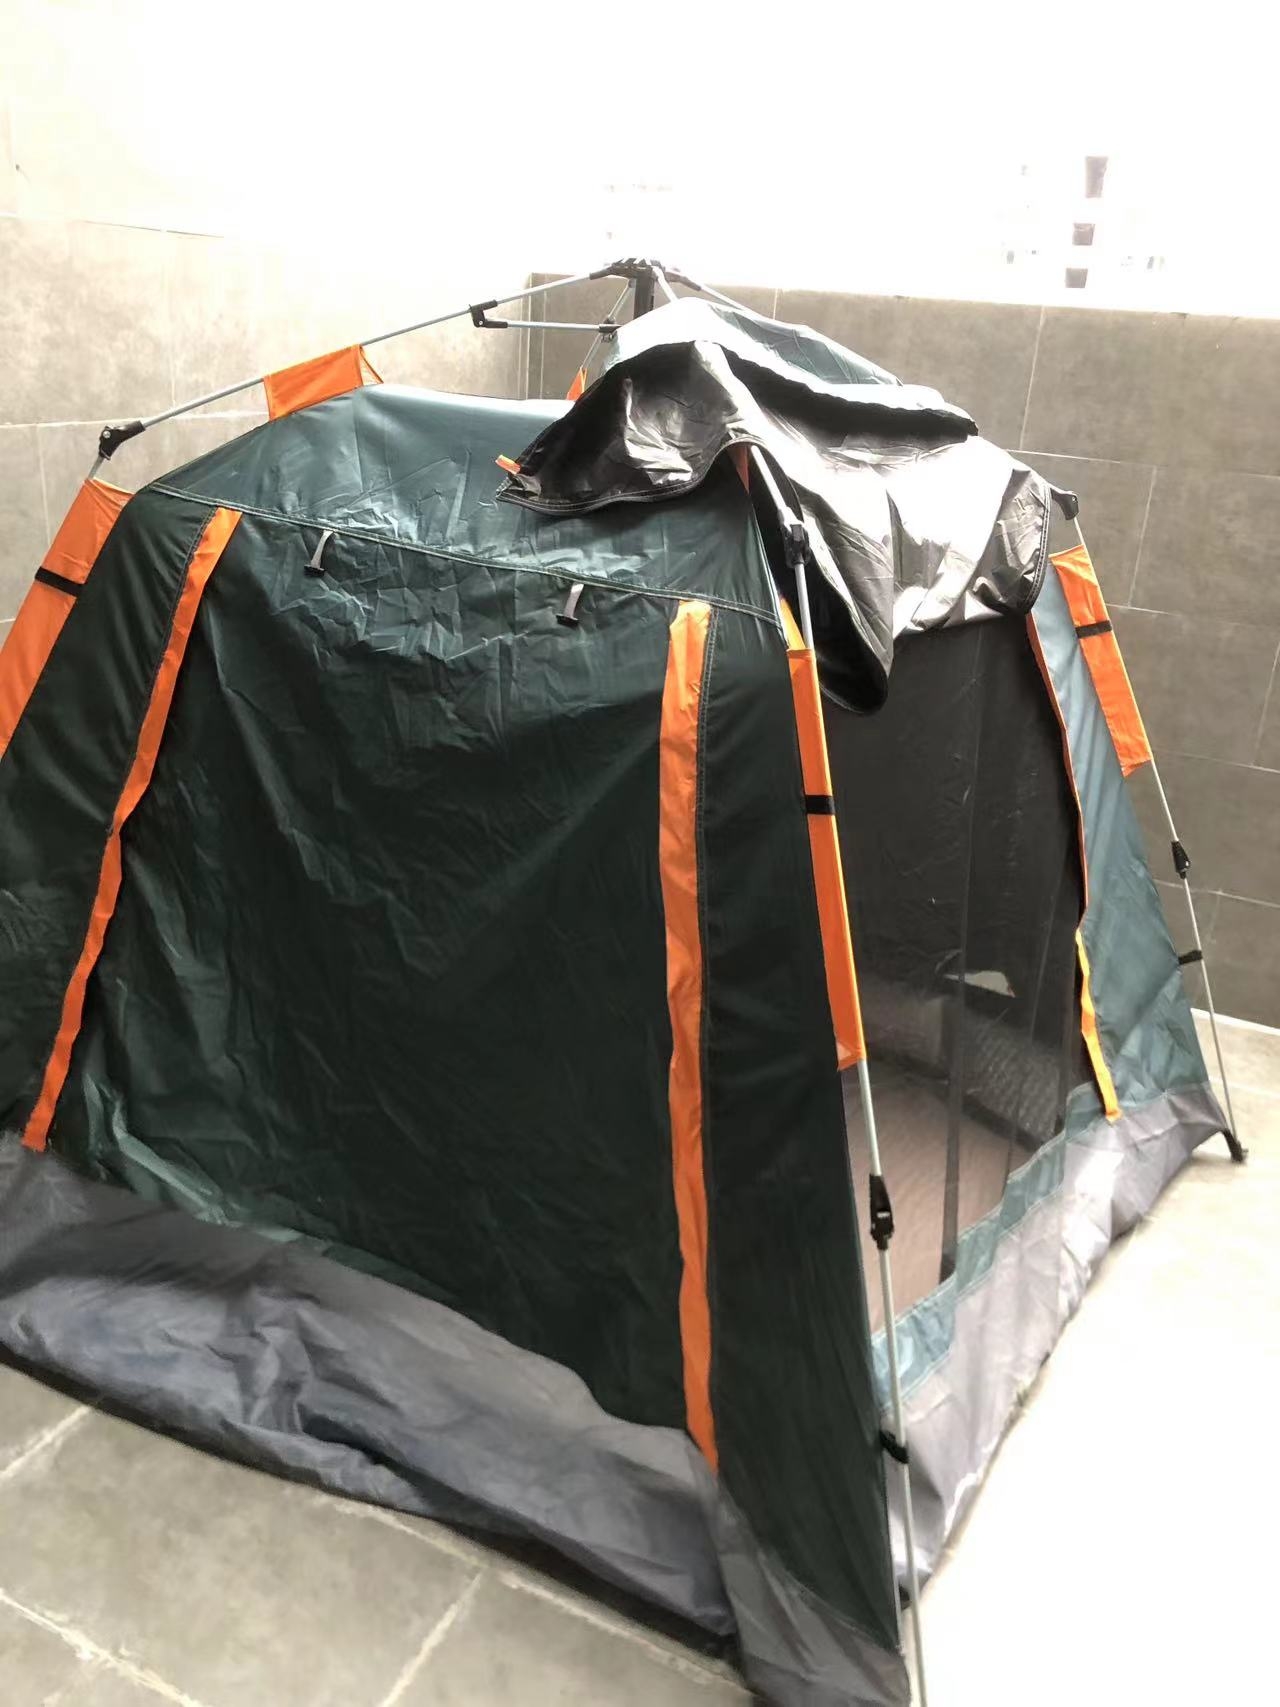 在竹溪，在酒店里边，下雨天，住这种帐篷，感受如何?